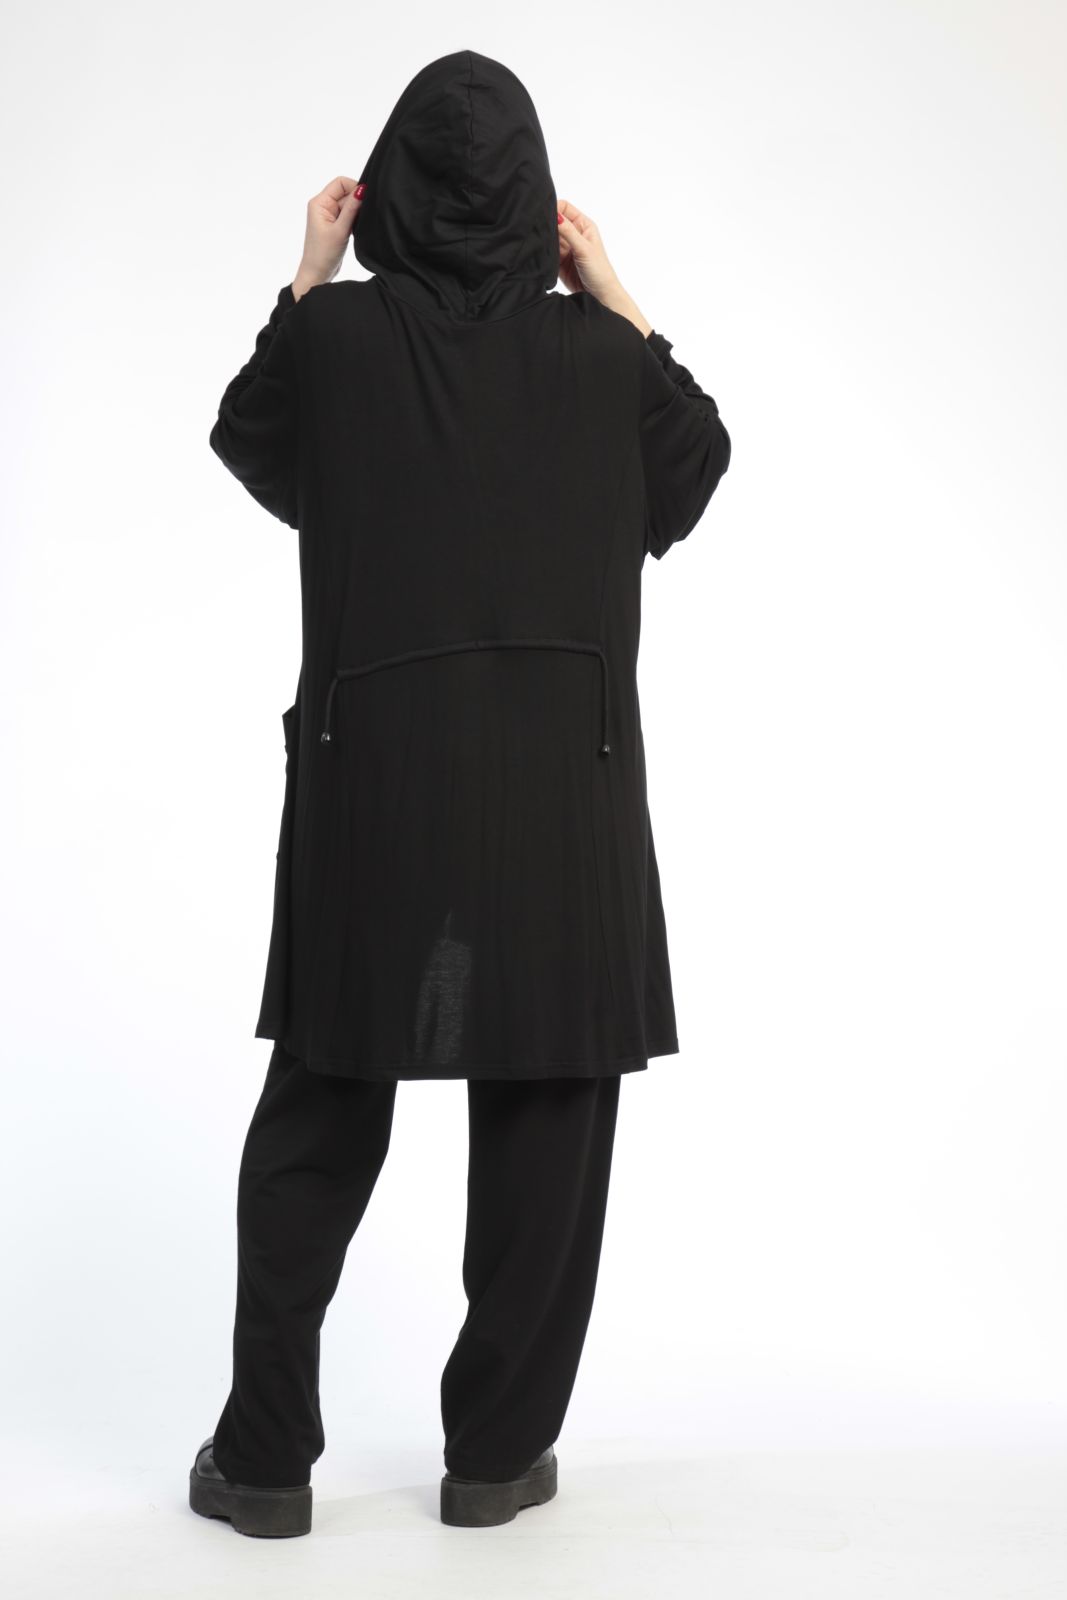 Alltags Jacke in A-Form aus weicher Jersey Qualität, Viskose-Basics in Schwarz